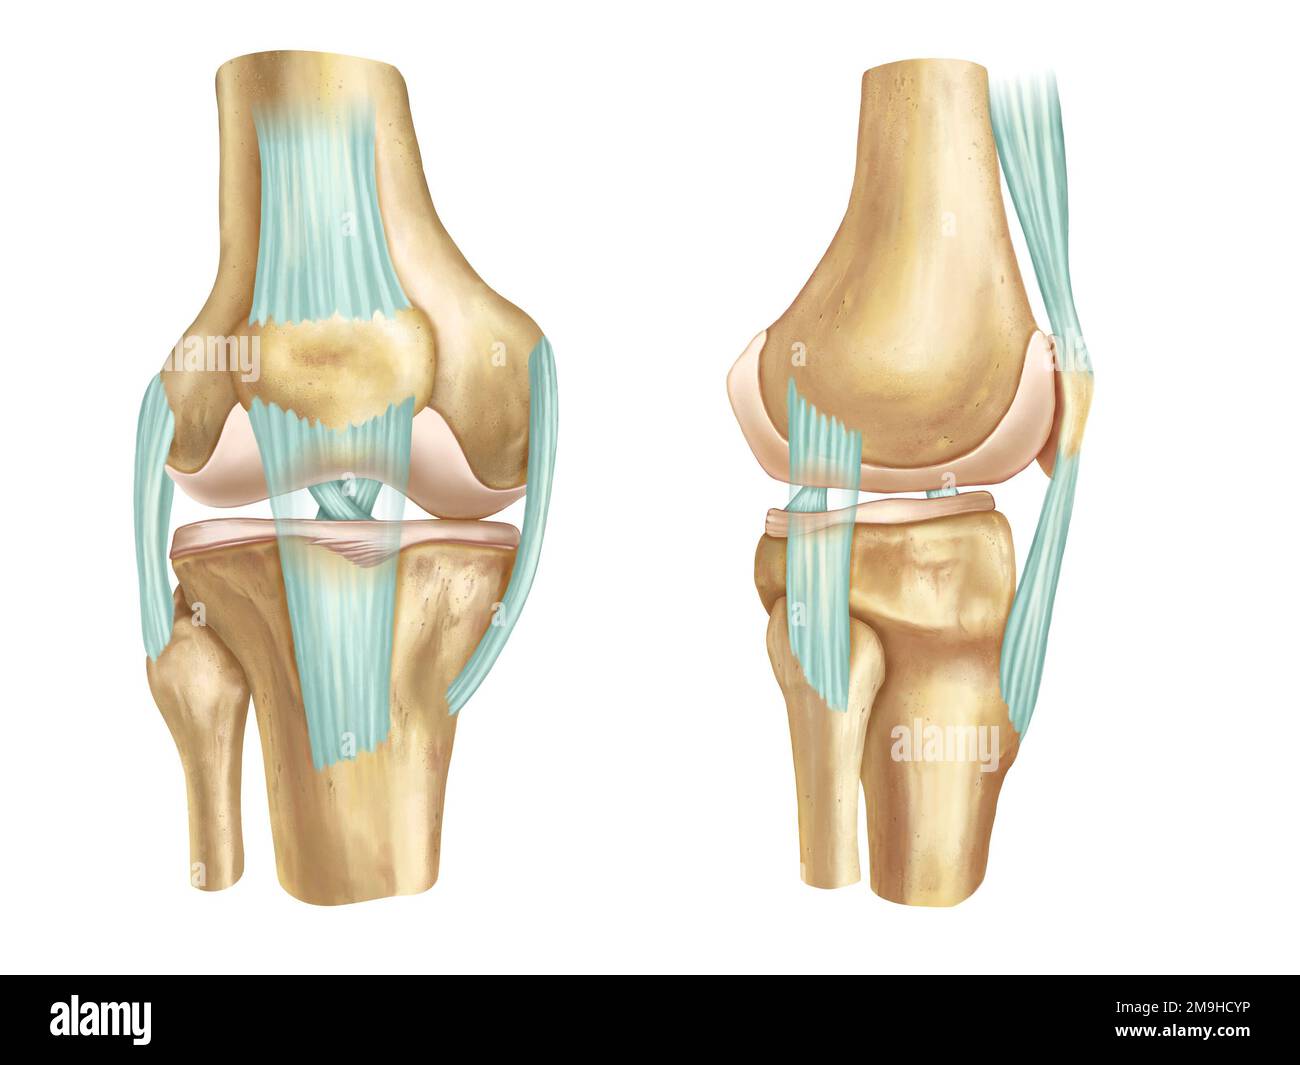 Vue anatomique avant et latérale d'un genou humain. Illustration numérique. Banque D'Images